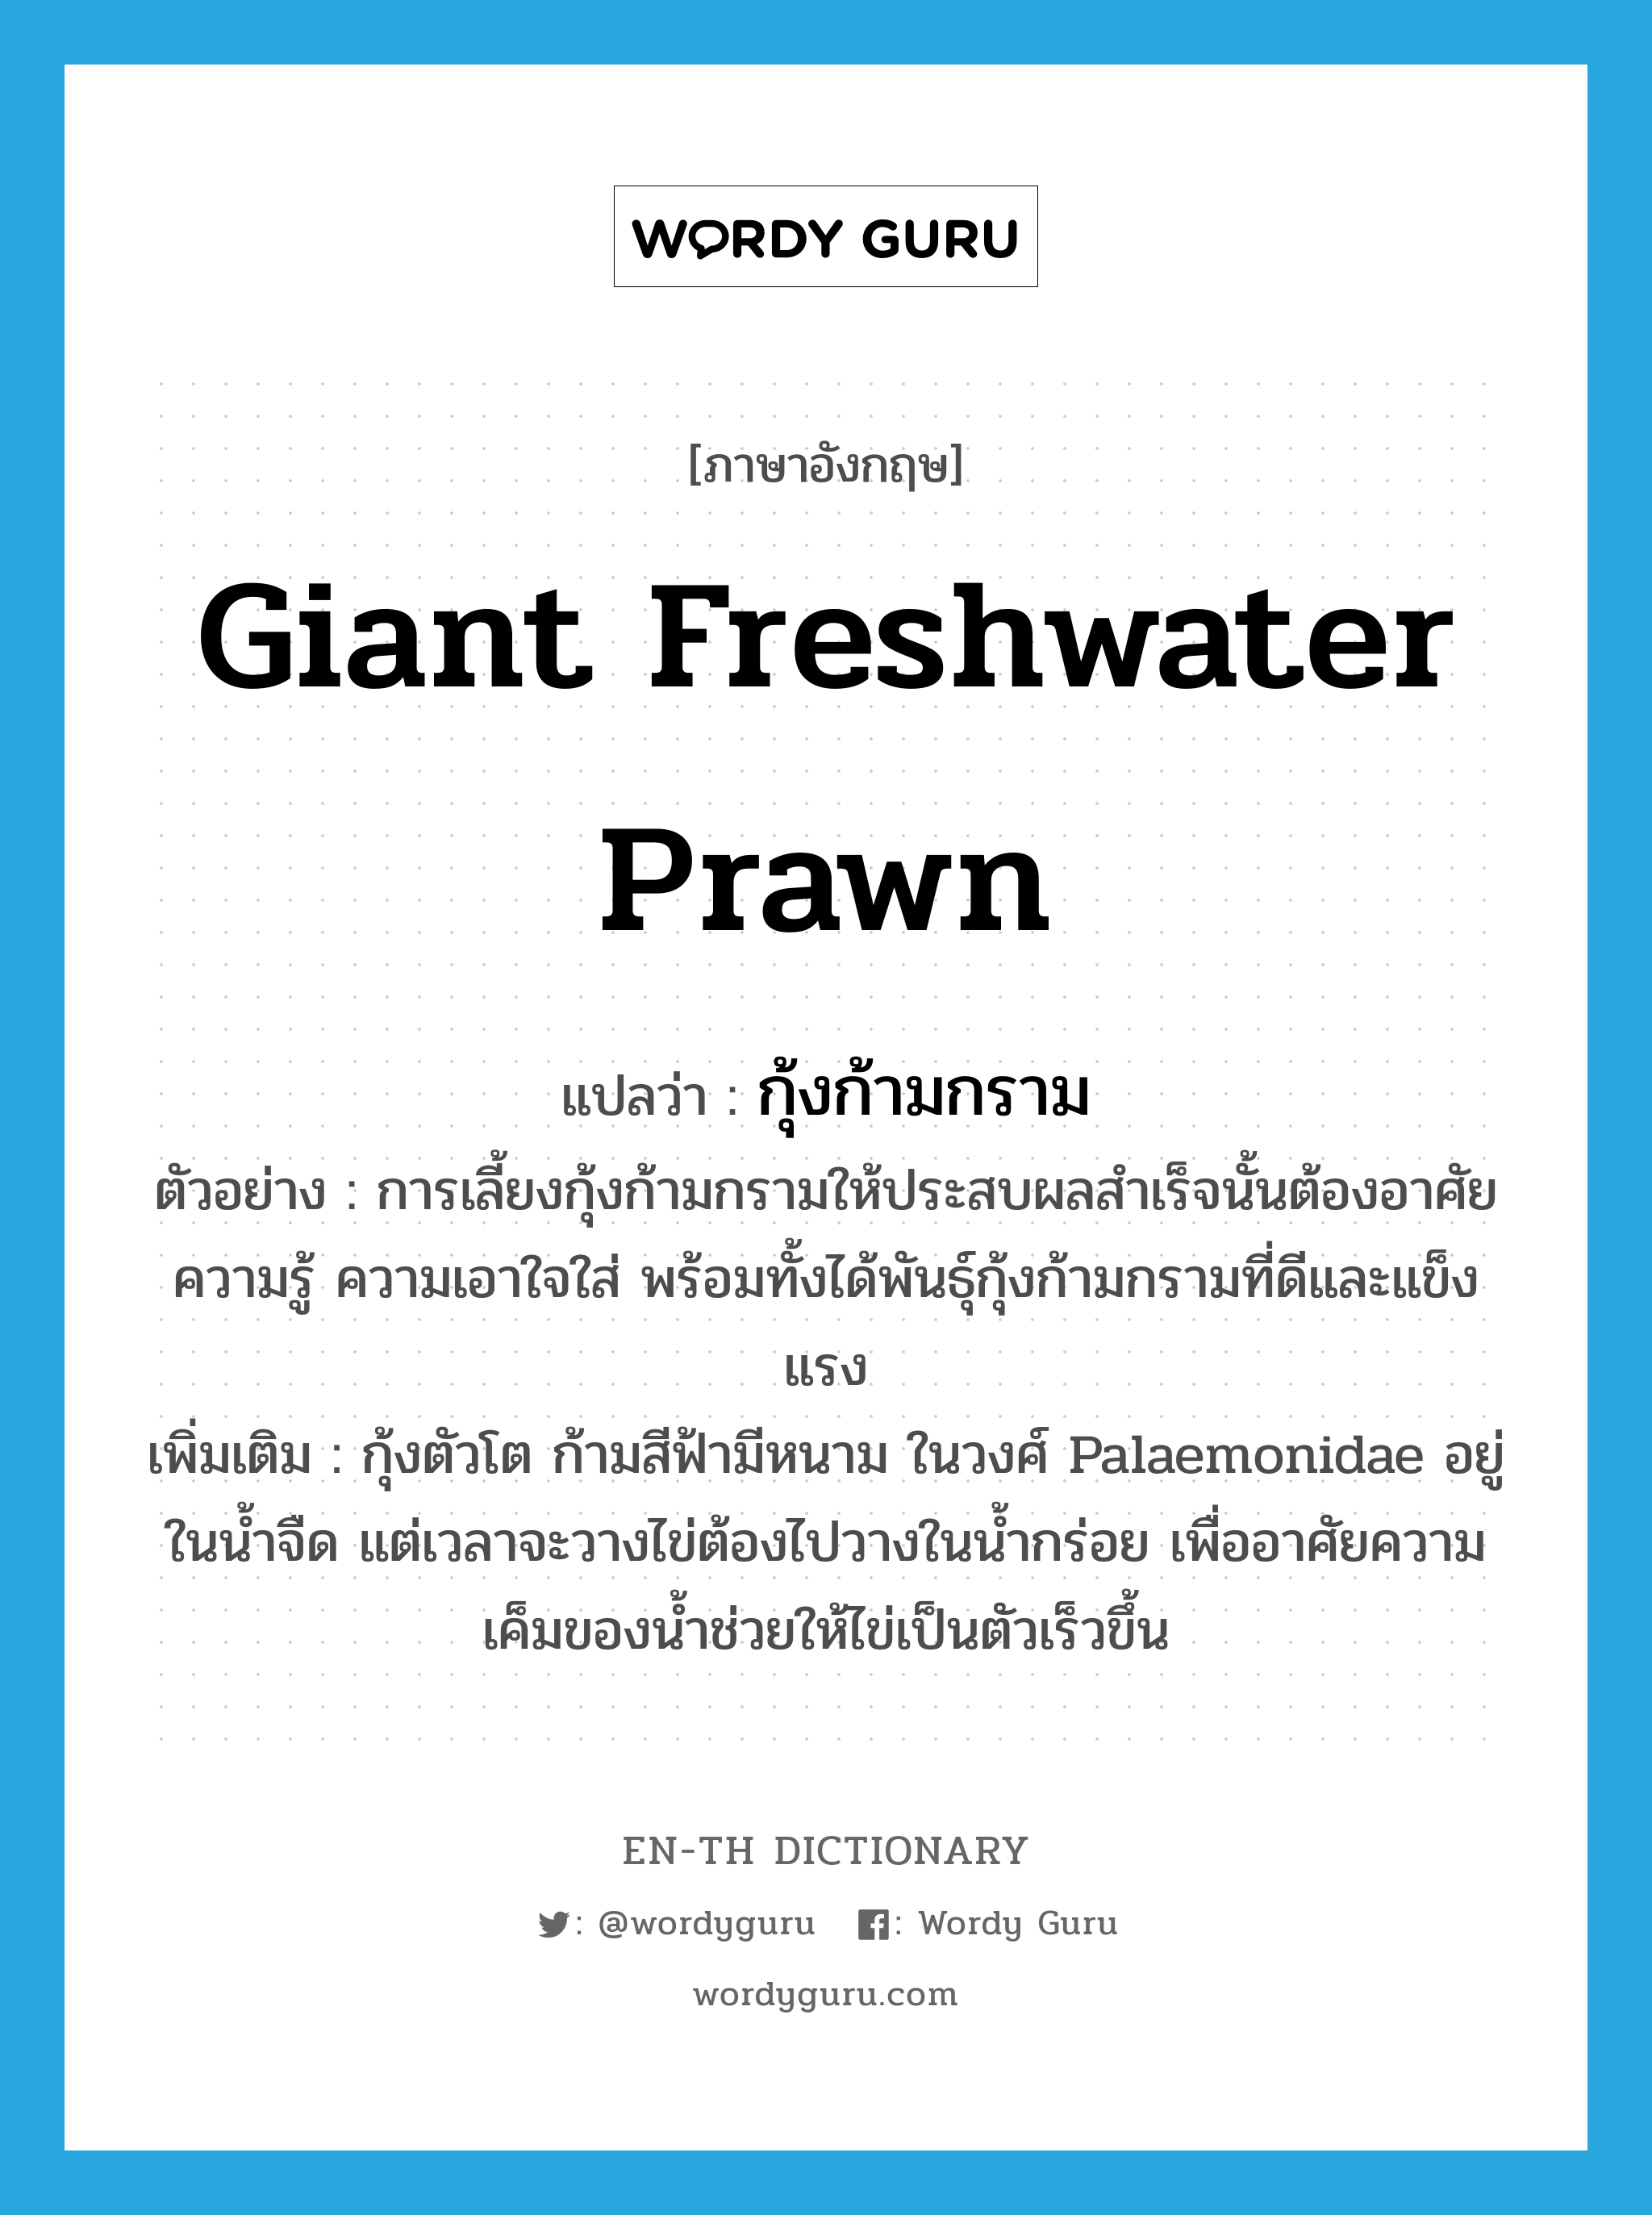 giant freshwater prawn แปลว่า?, คำศัพท์ภาษาอังกฤษ giant freshwater prawn แปลว่า กุ้งก้ามกราม ประเภท N ตัวอย่าง การเลี้ยงกุ้งก้ามกรามให้ประสบผลสำเร็จนั้นต้องอาศัยความรู้ ความเอาใจใส่ พร้อมทั้งได้พันธุ์กุ้งก้ามกรามที่ดีและแข็งแรง เพิ่มเติม กุ้งตัวโต ก้ามสีฟ้ามีหนาม ในวงศ์ Palaemonidae อยู่ในน้ำจืด แต่เวลาจะวางไข่ต้องไปวางในน้ำกร่อย เพื่ออาศัยความเค็มของน้ำช่วยให้ไข่เป็นตัวเร็วขึ้น หมวด N